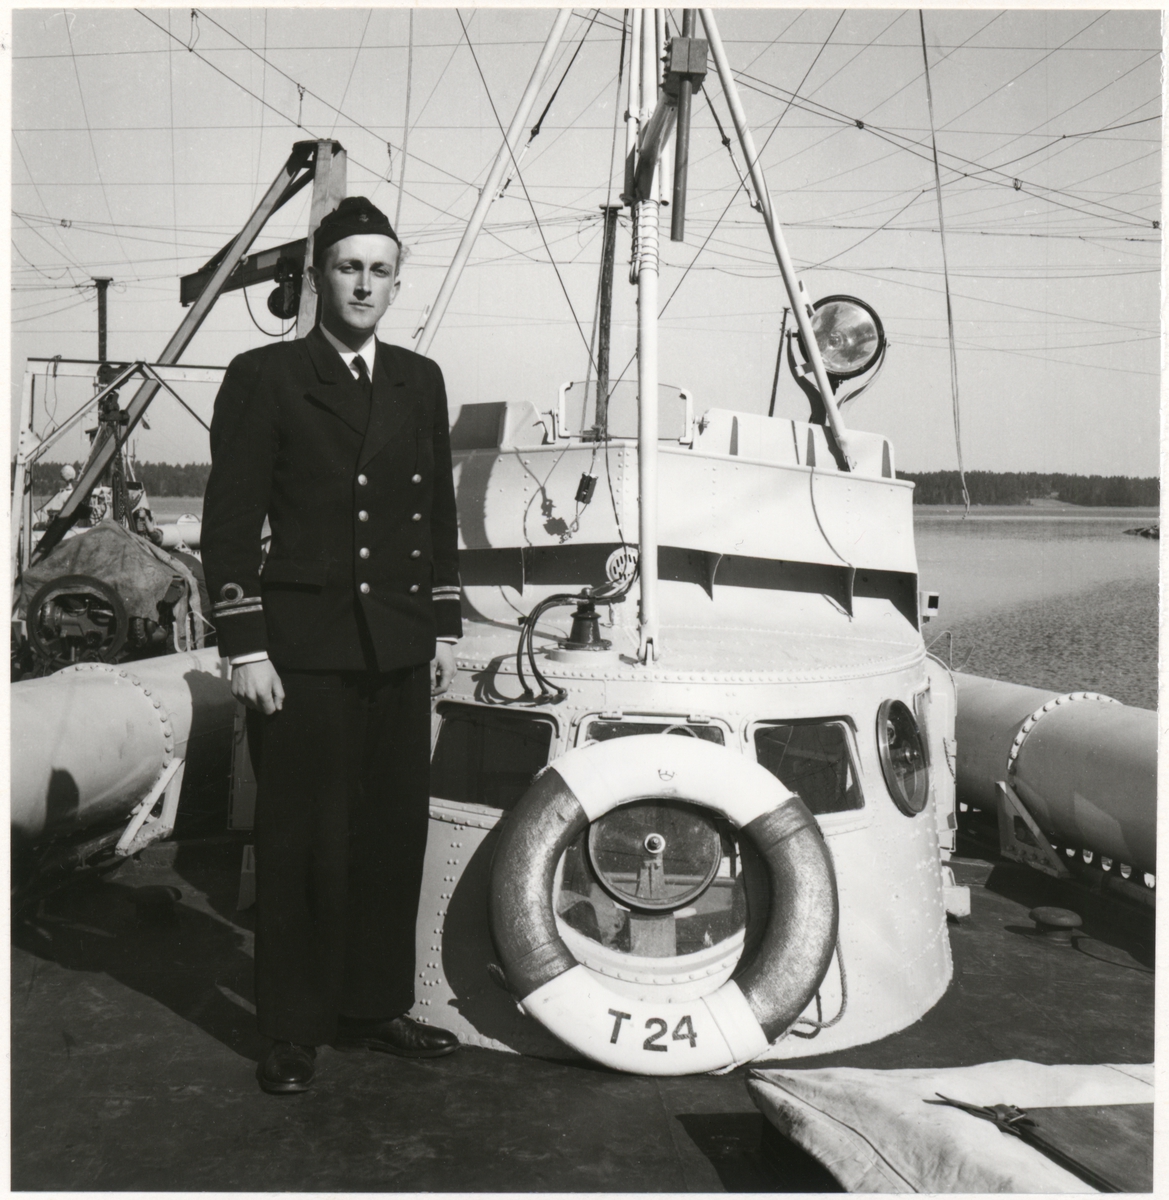 [från fotobeskrivningen:] "Fartygschefen på torpedbåten T 24, löjtnant Forsbeck [sic], år 1949."